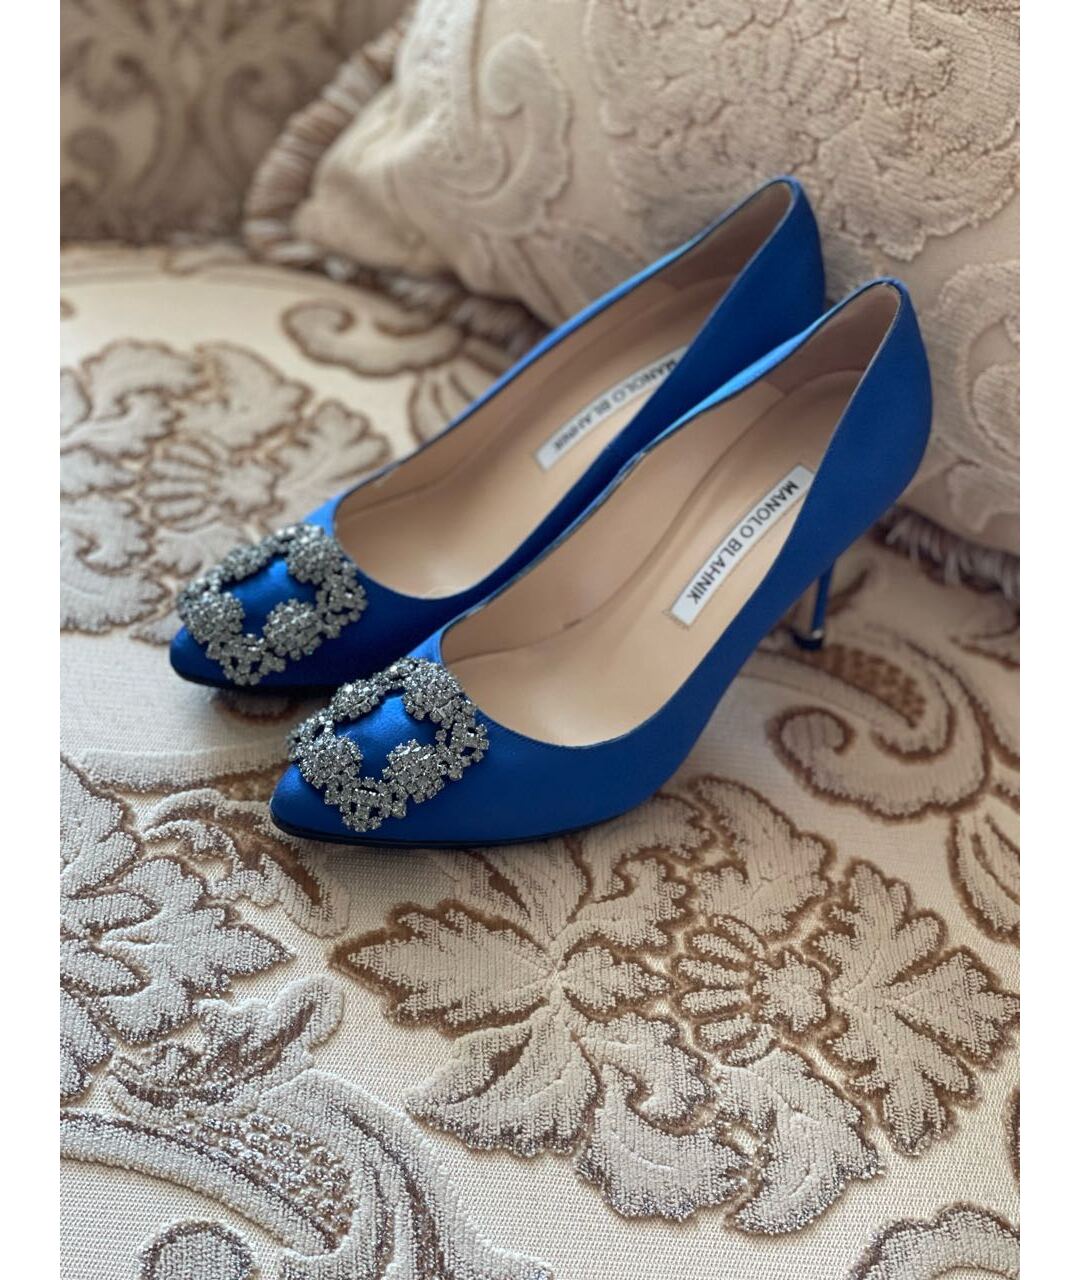 MANOLO BLAHNIK Синие текстильные туфли, фото 2